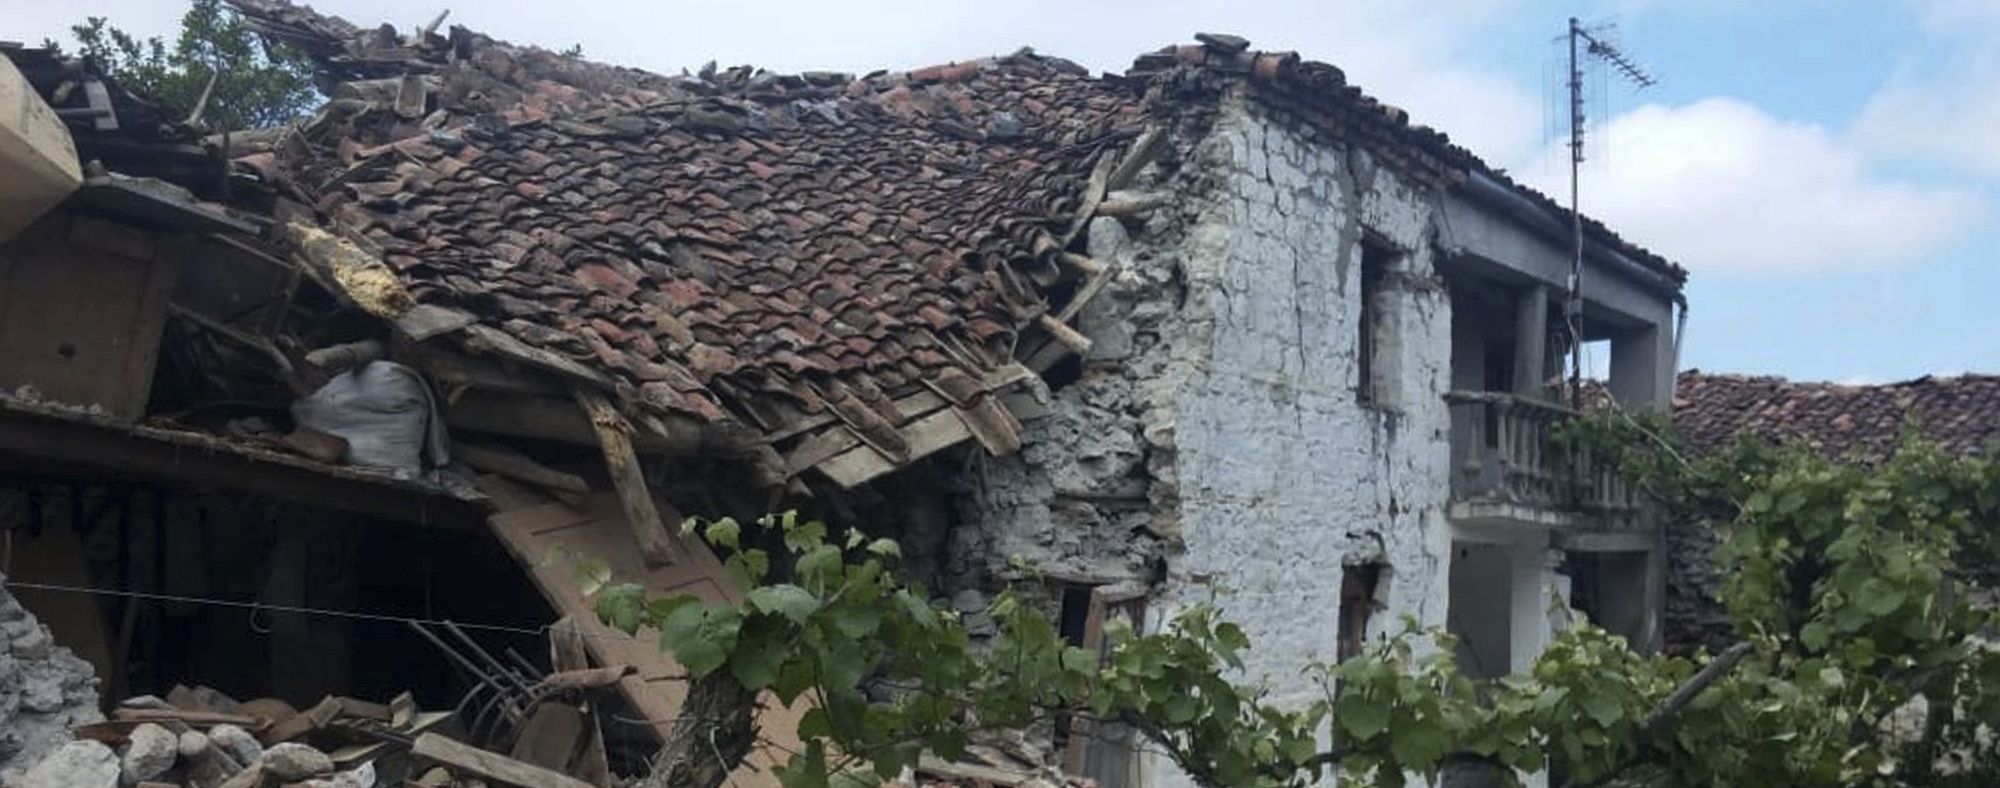 Євросоюз зібрав понад мільярд євро на відновлення Албанії після землетрусу